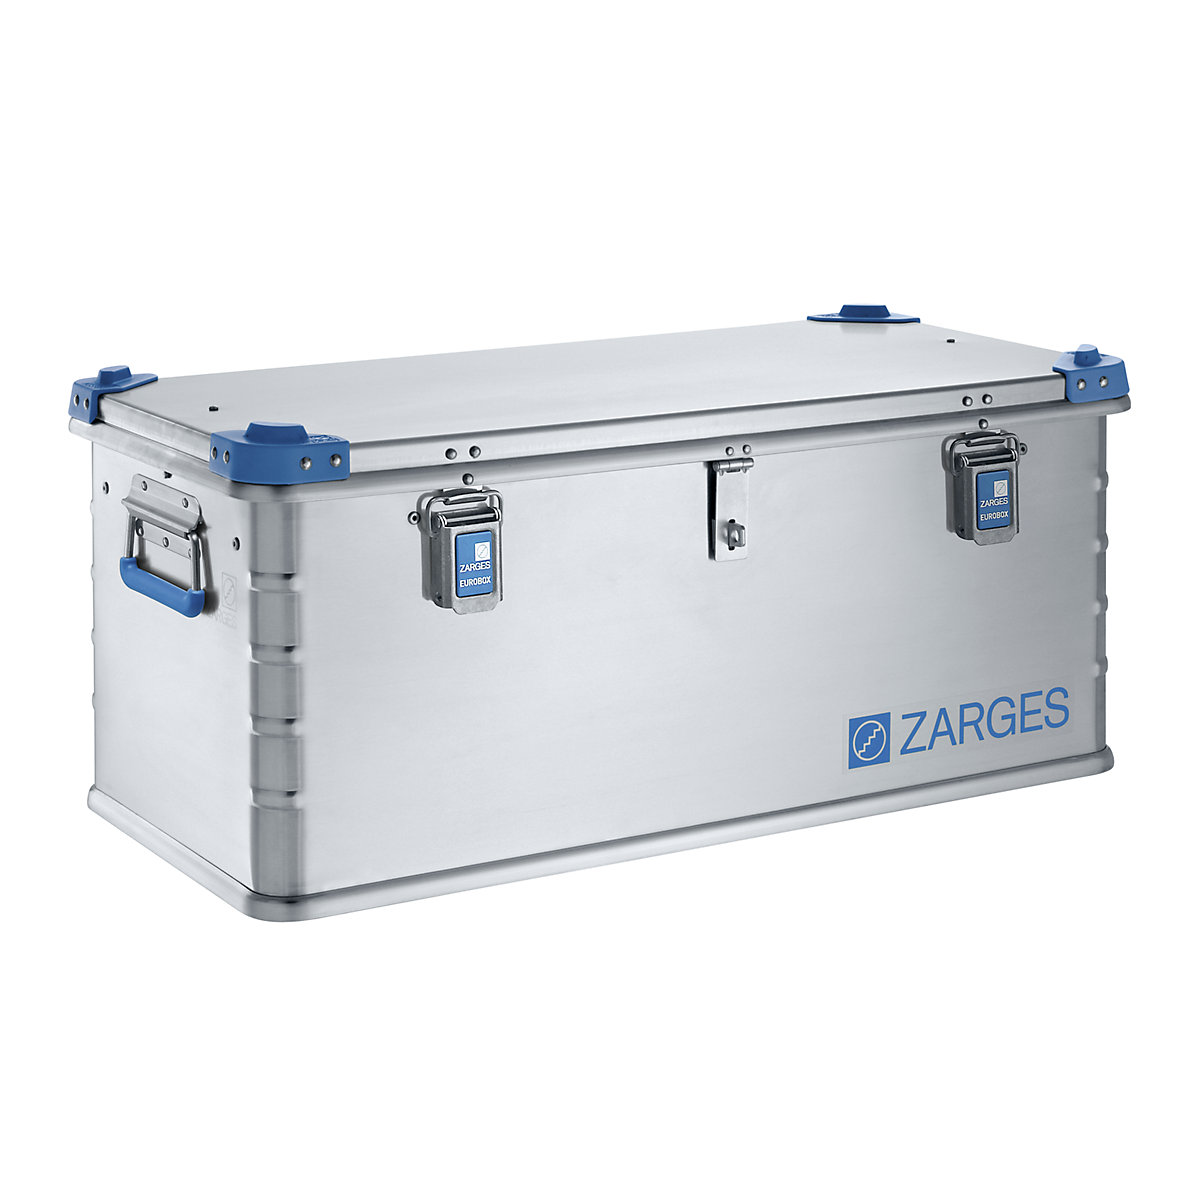 ZARGES Alu-Euro-Werkzeugbox, stapelbar, Inhalt 81 l